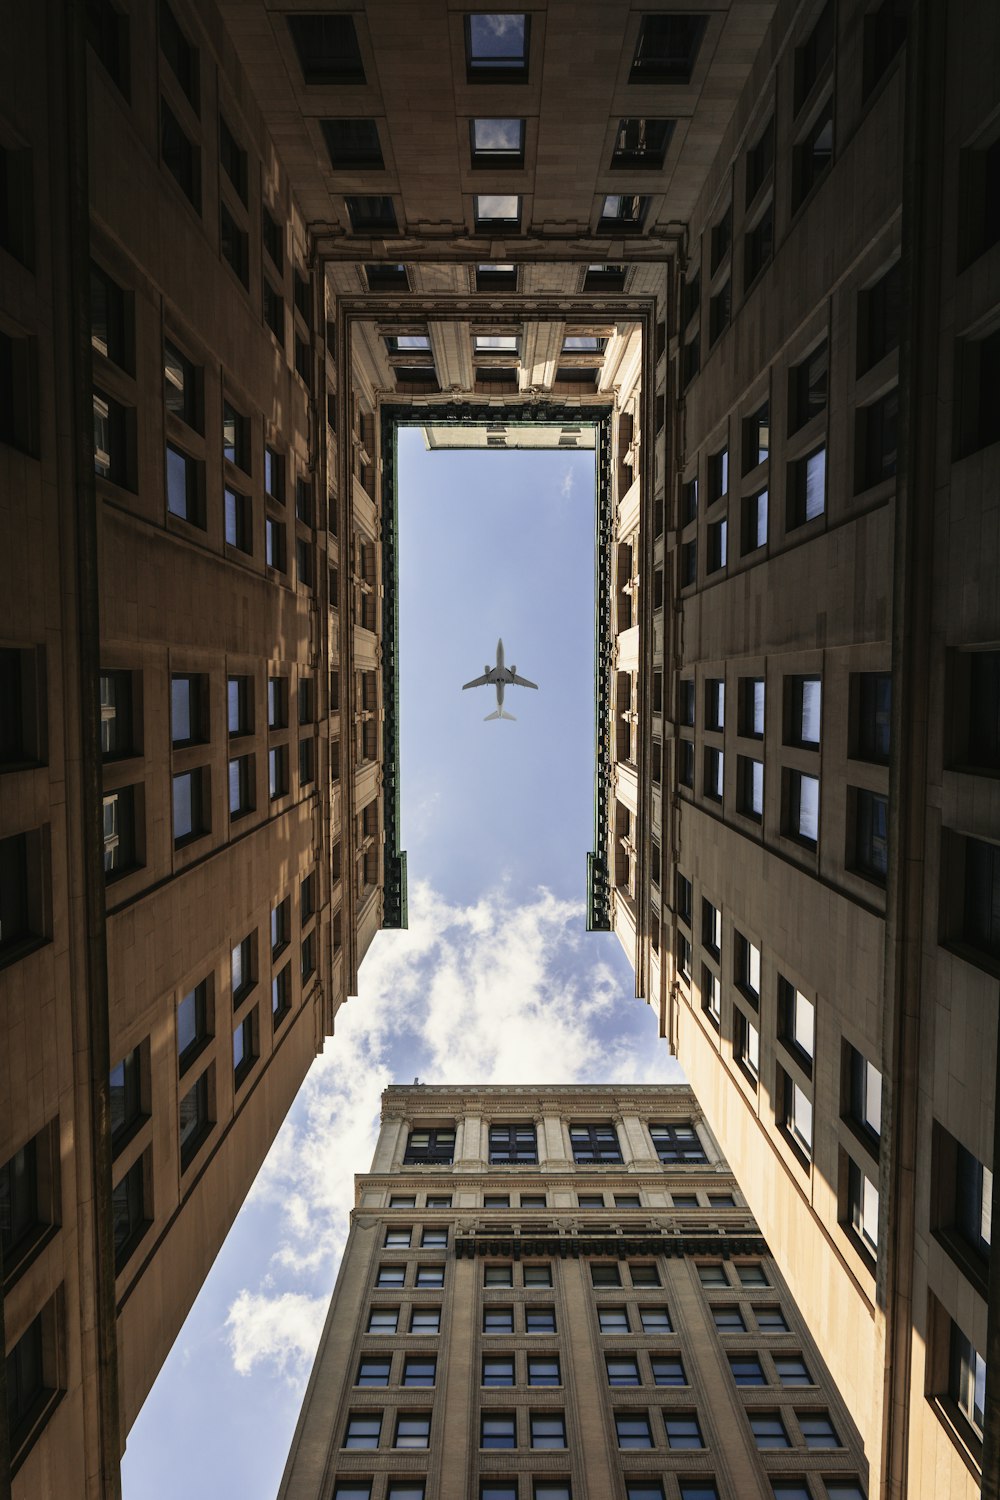 aeroplano che vola in cima a grattacieli